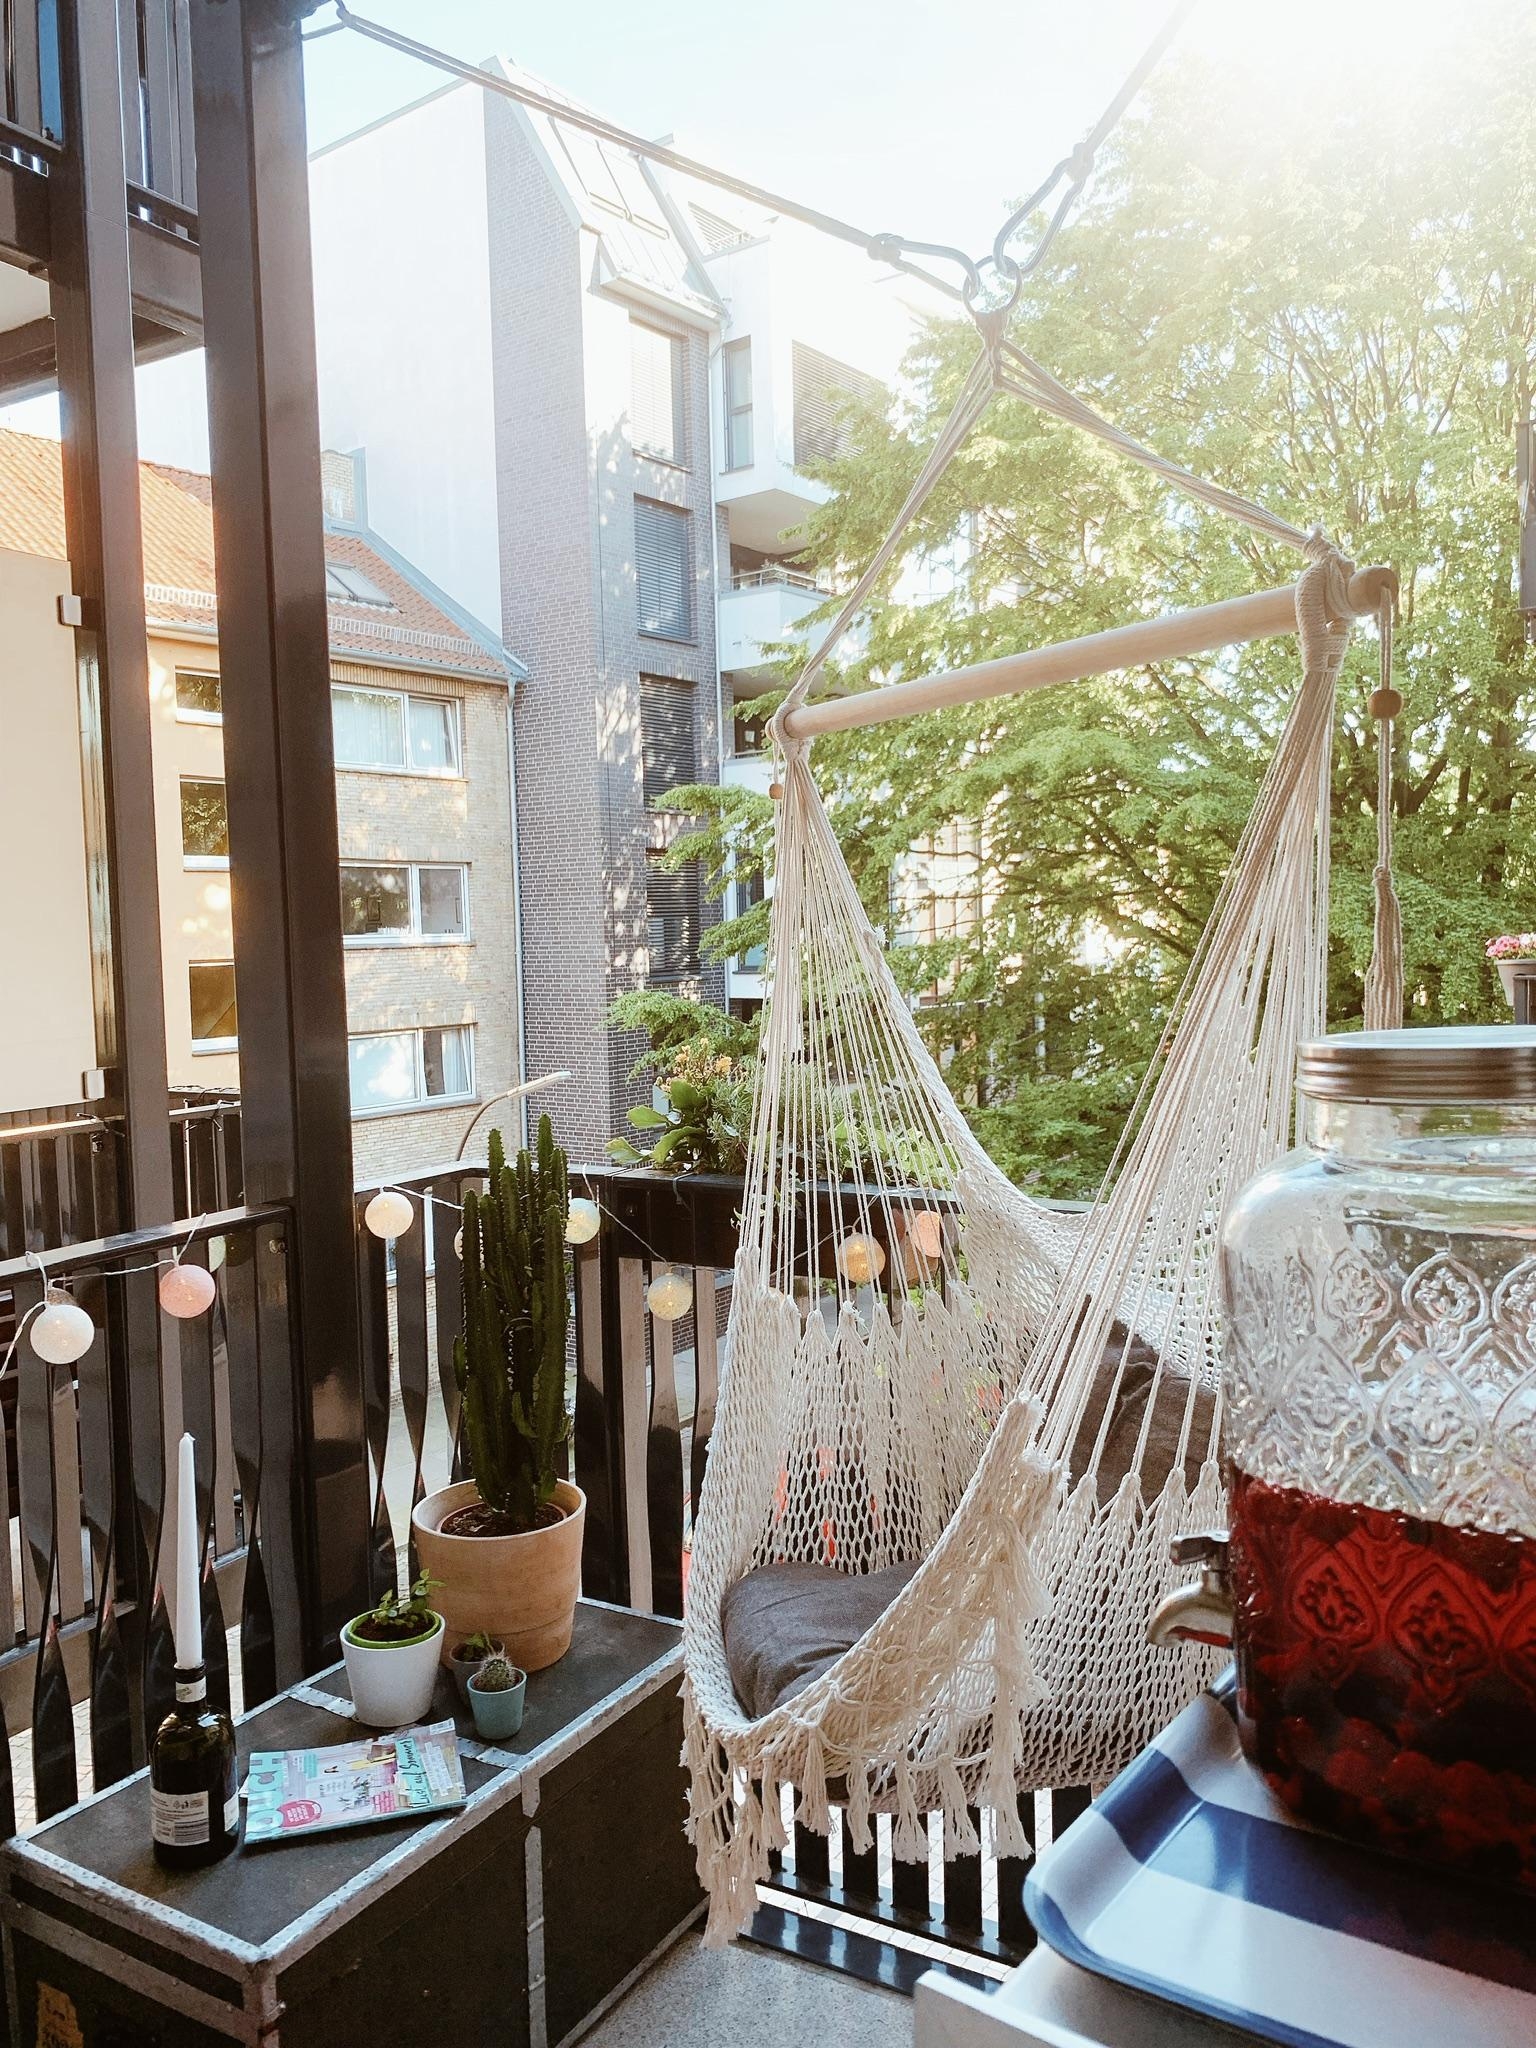 Nochmal den #Sommer genießen ☀️
#sitzecke #livingchallenge #balcony #hängesessel #hygge